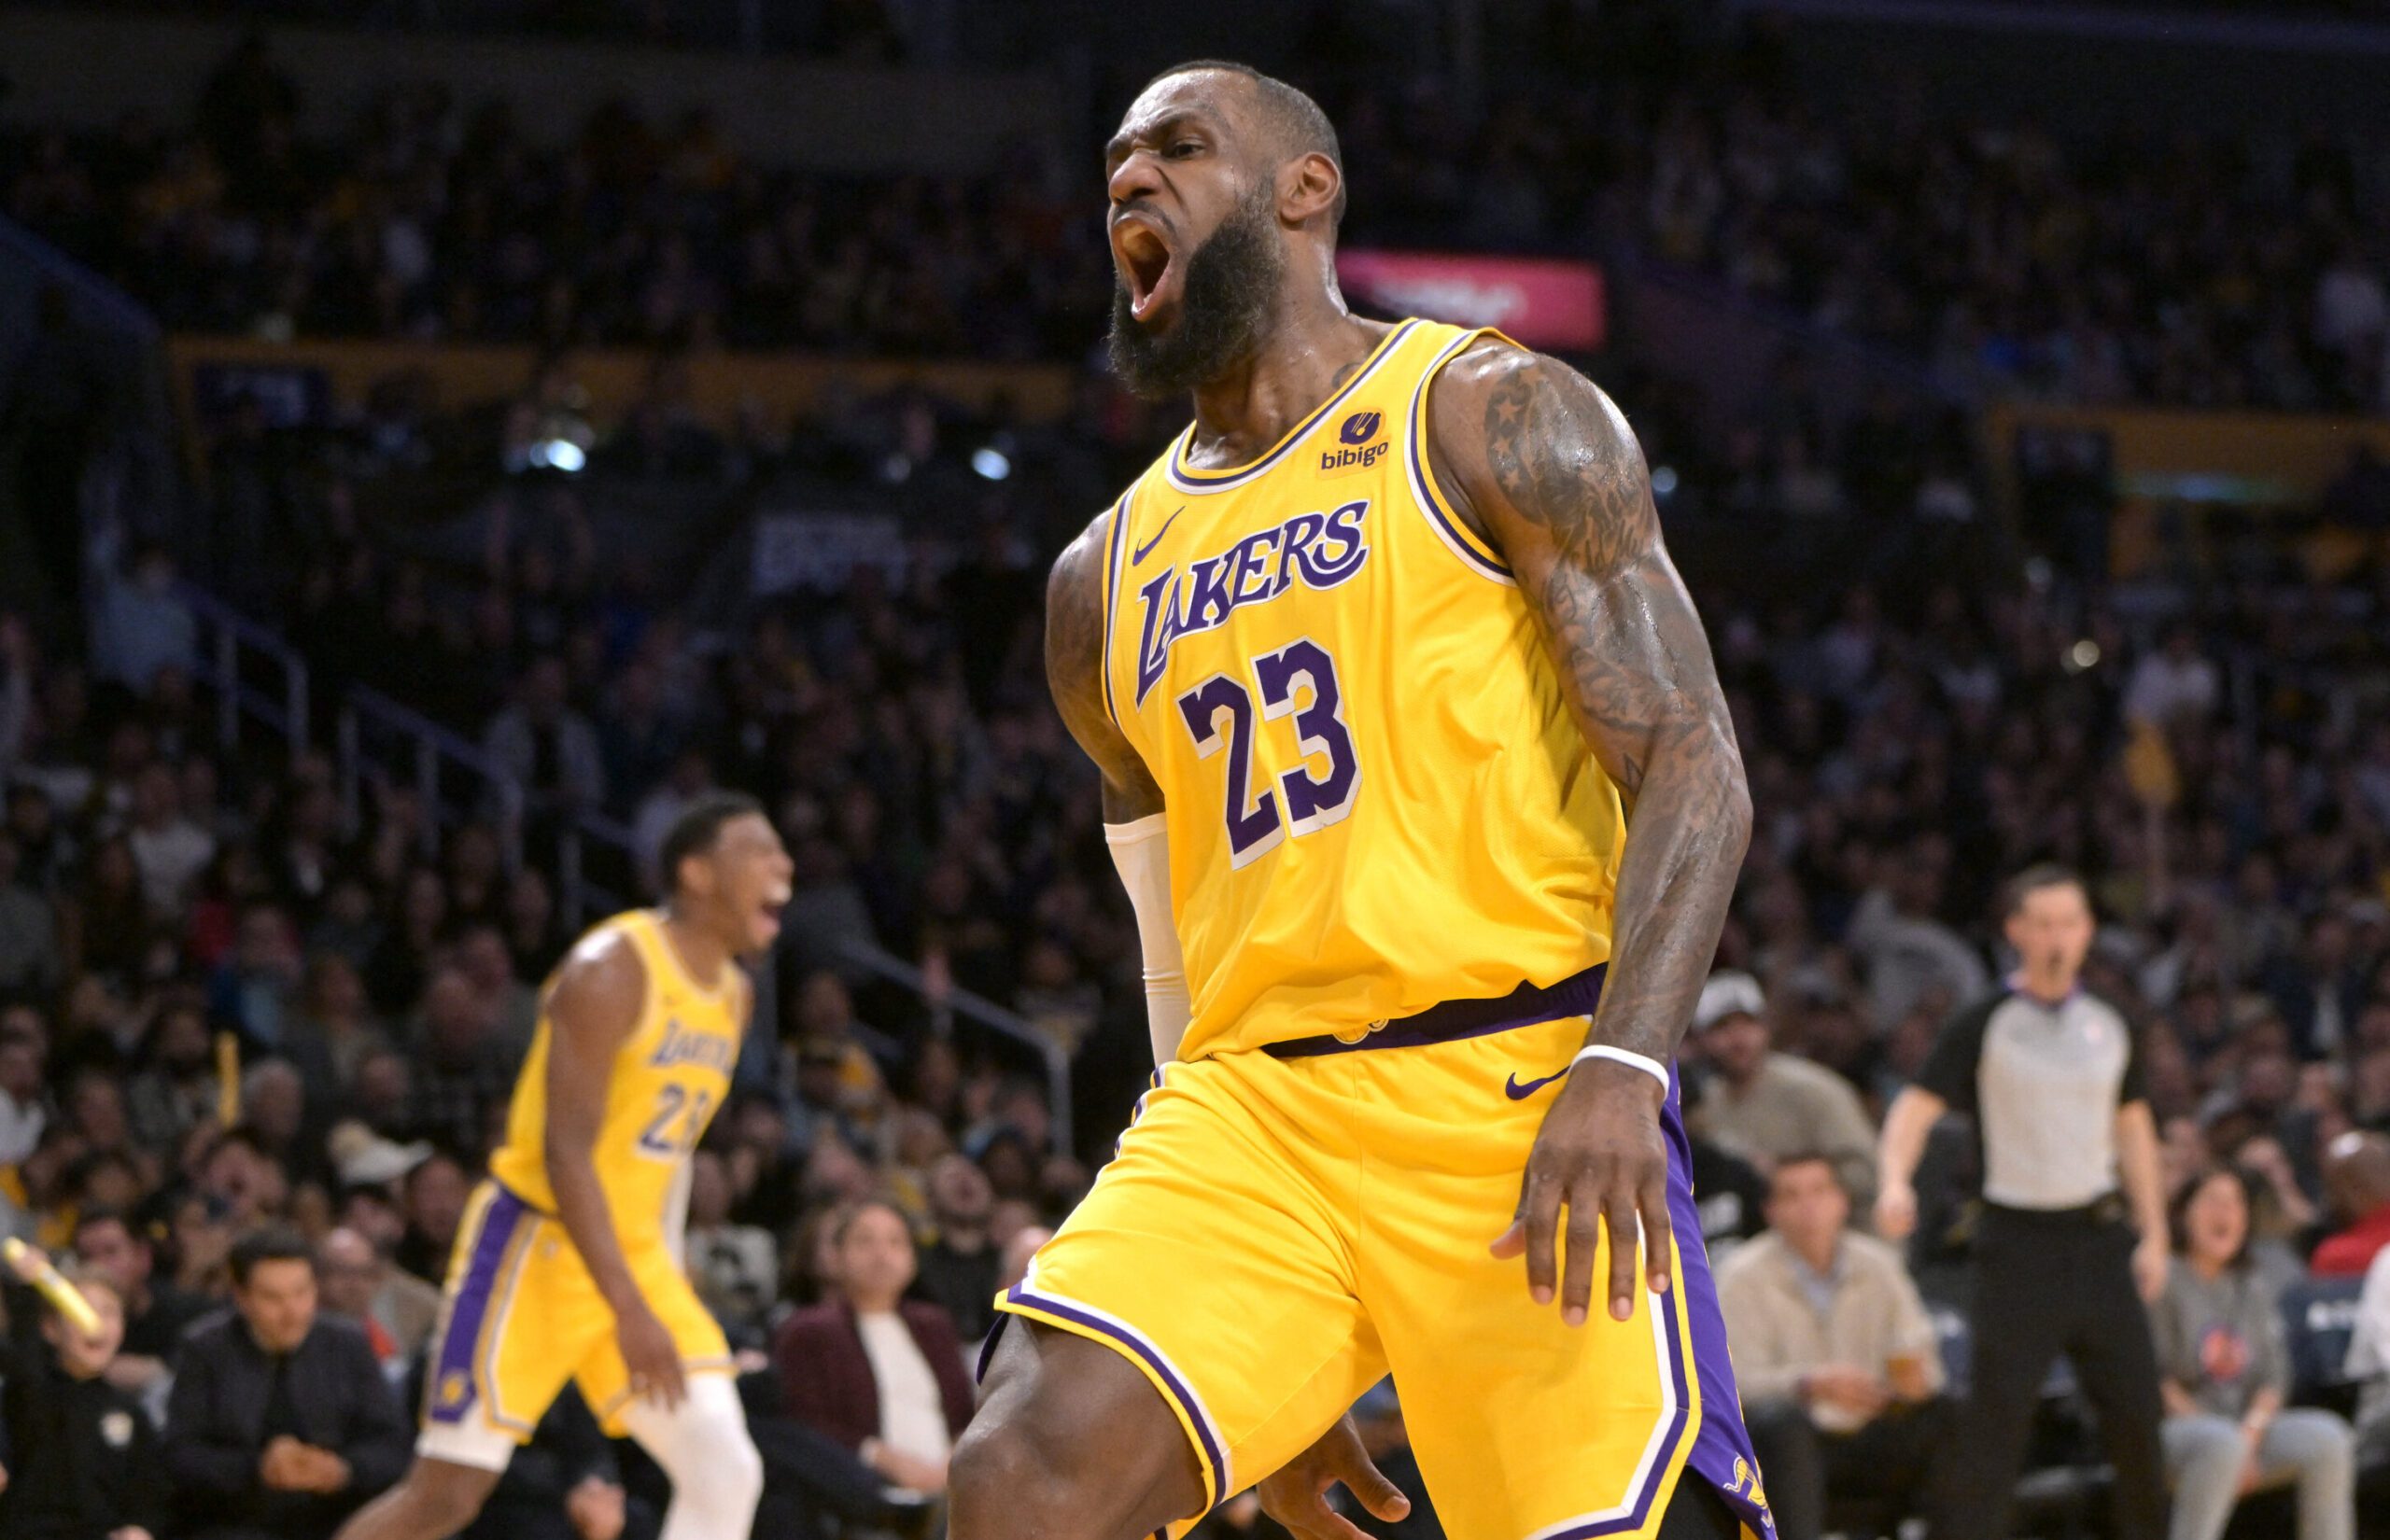 LeBron nears new scoring milestone, Dinwiddie debuts as Lakers stay hot